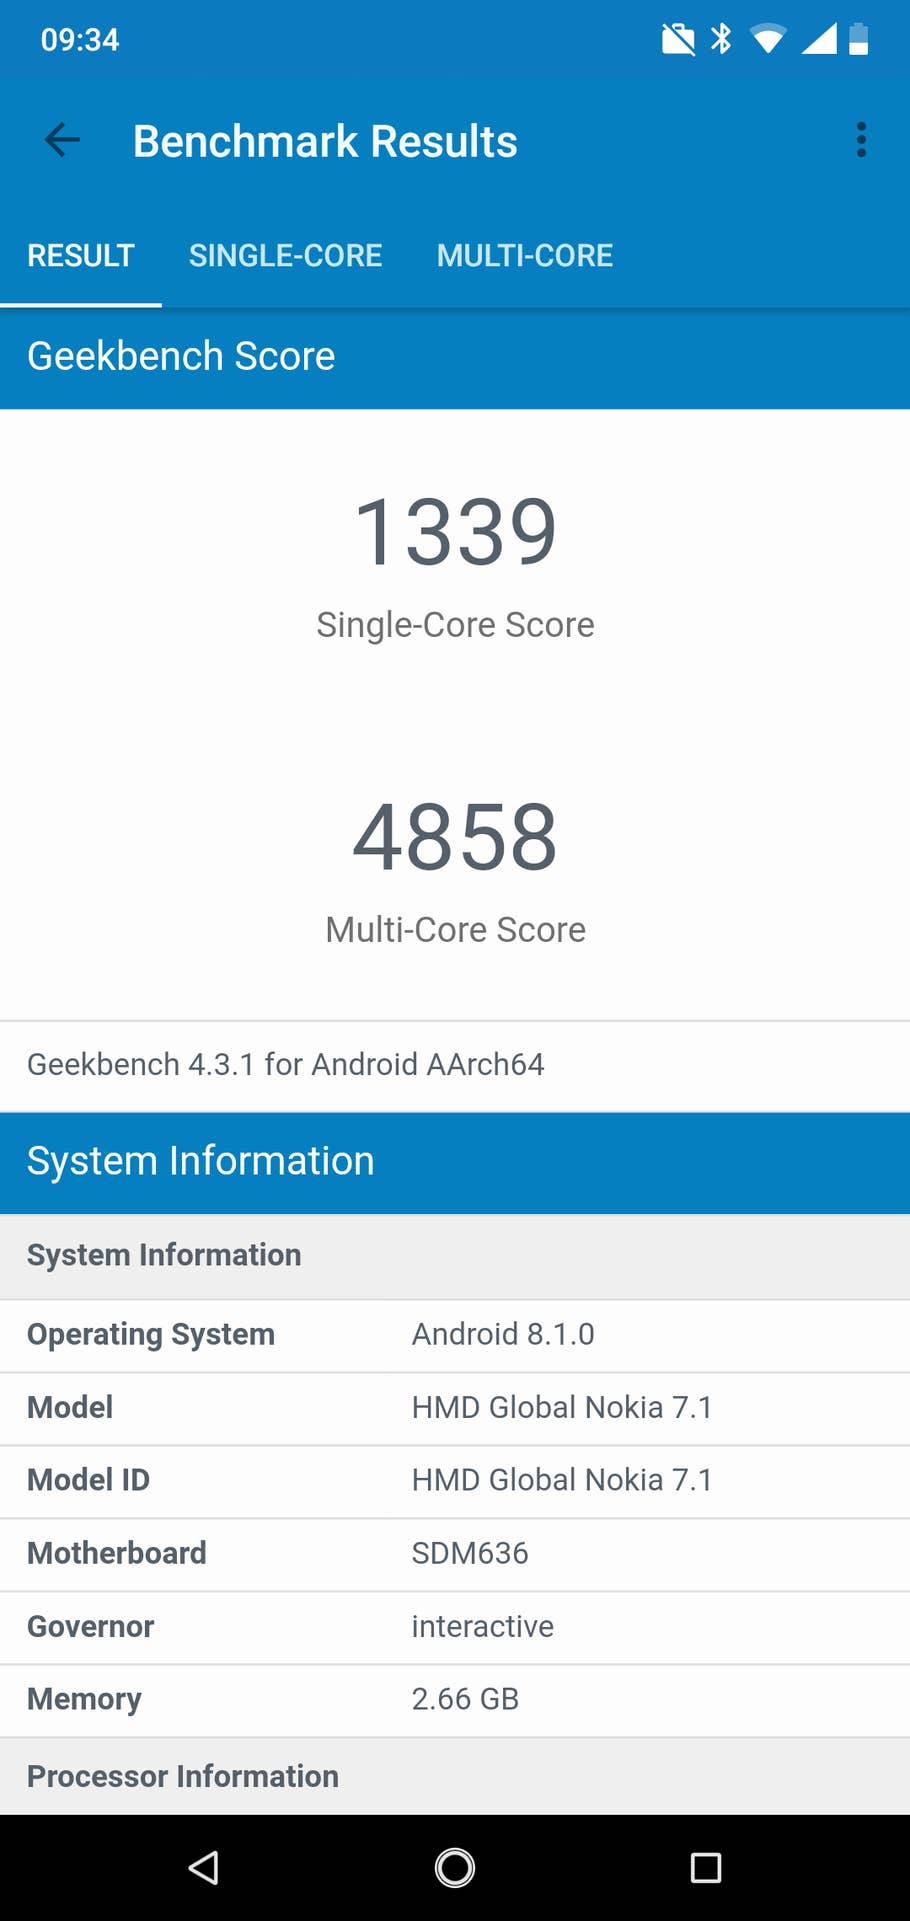 Nokia 7.1 im Test: Benchmark Results Geekbench 4.3.1 Score